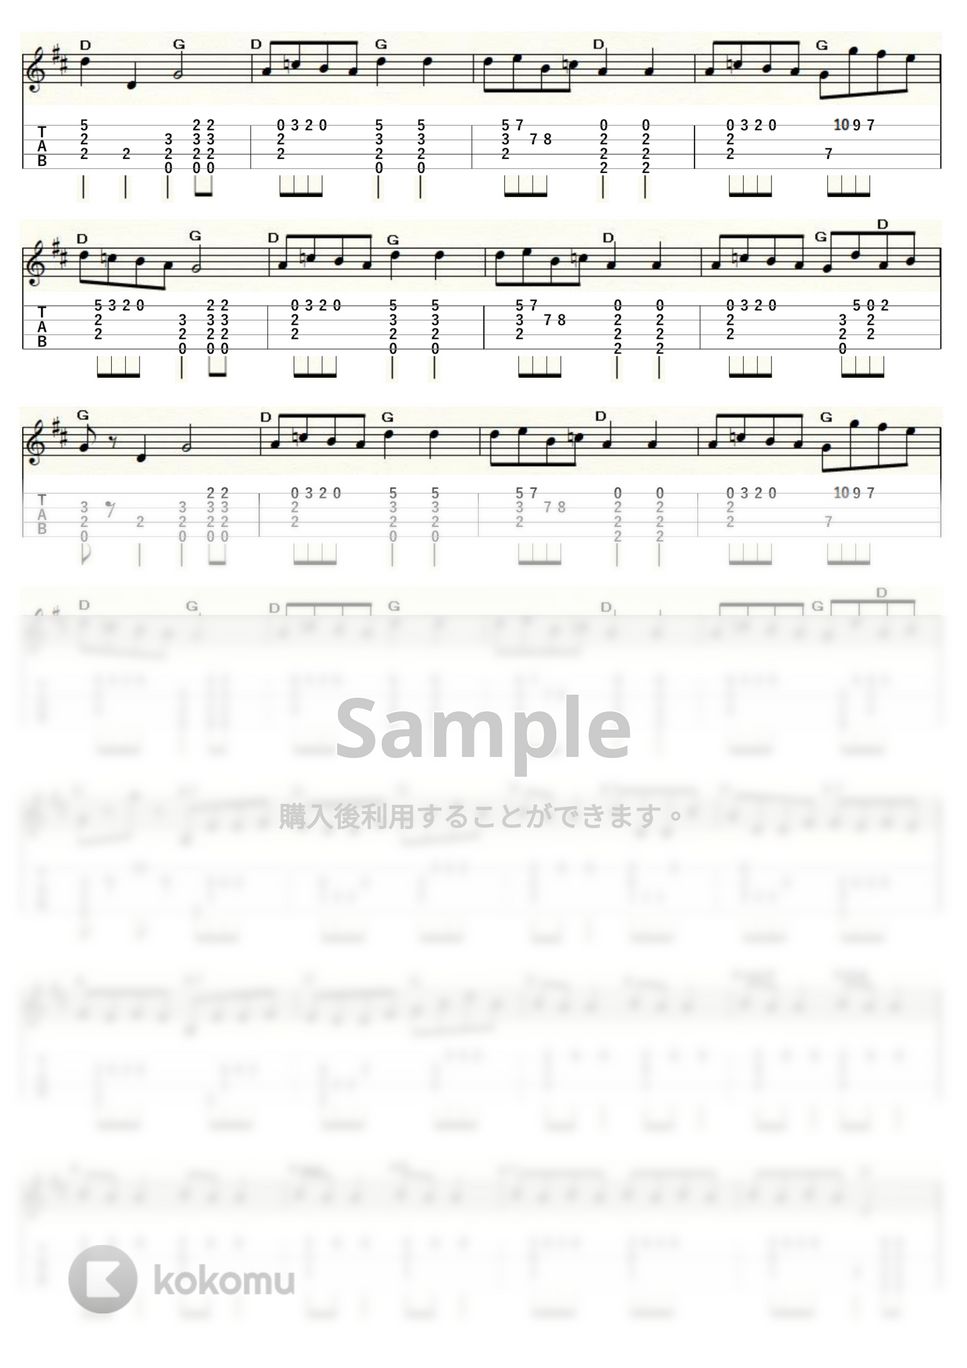 オッフェンバック - 天国と地獄 (ｳｸﾚﾚｿﾛ / Low-G / 中級～上級) by ukulelepapa